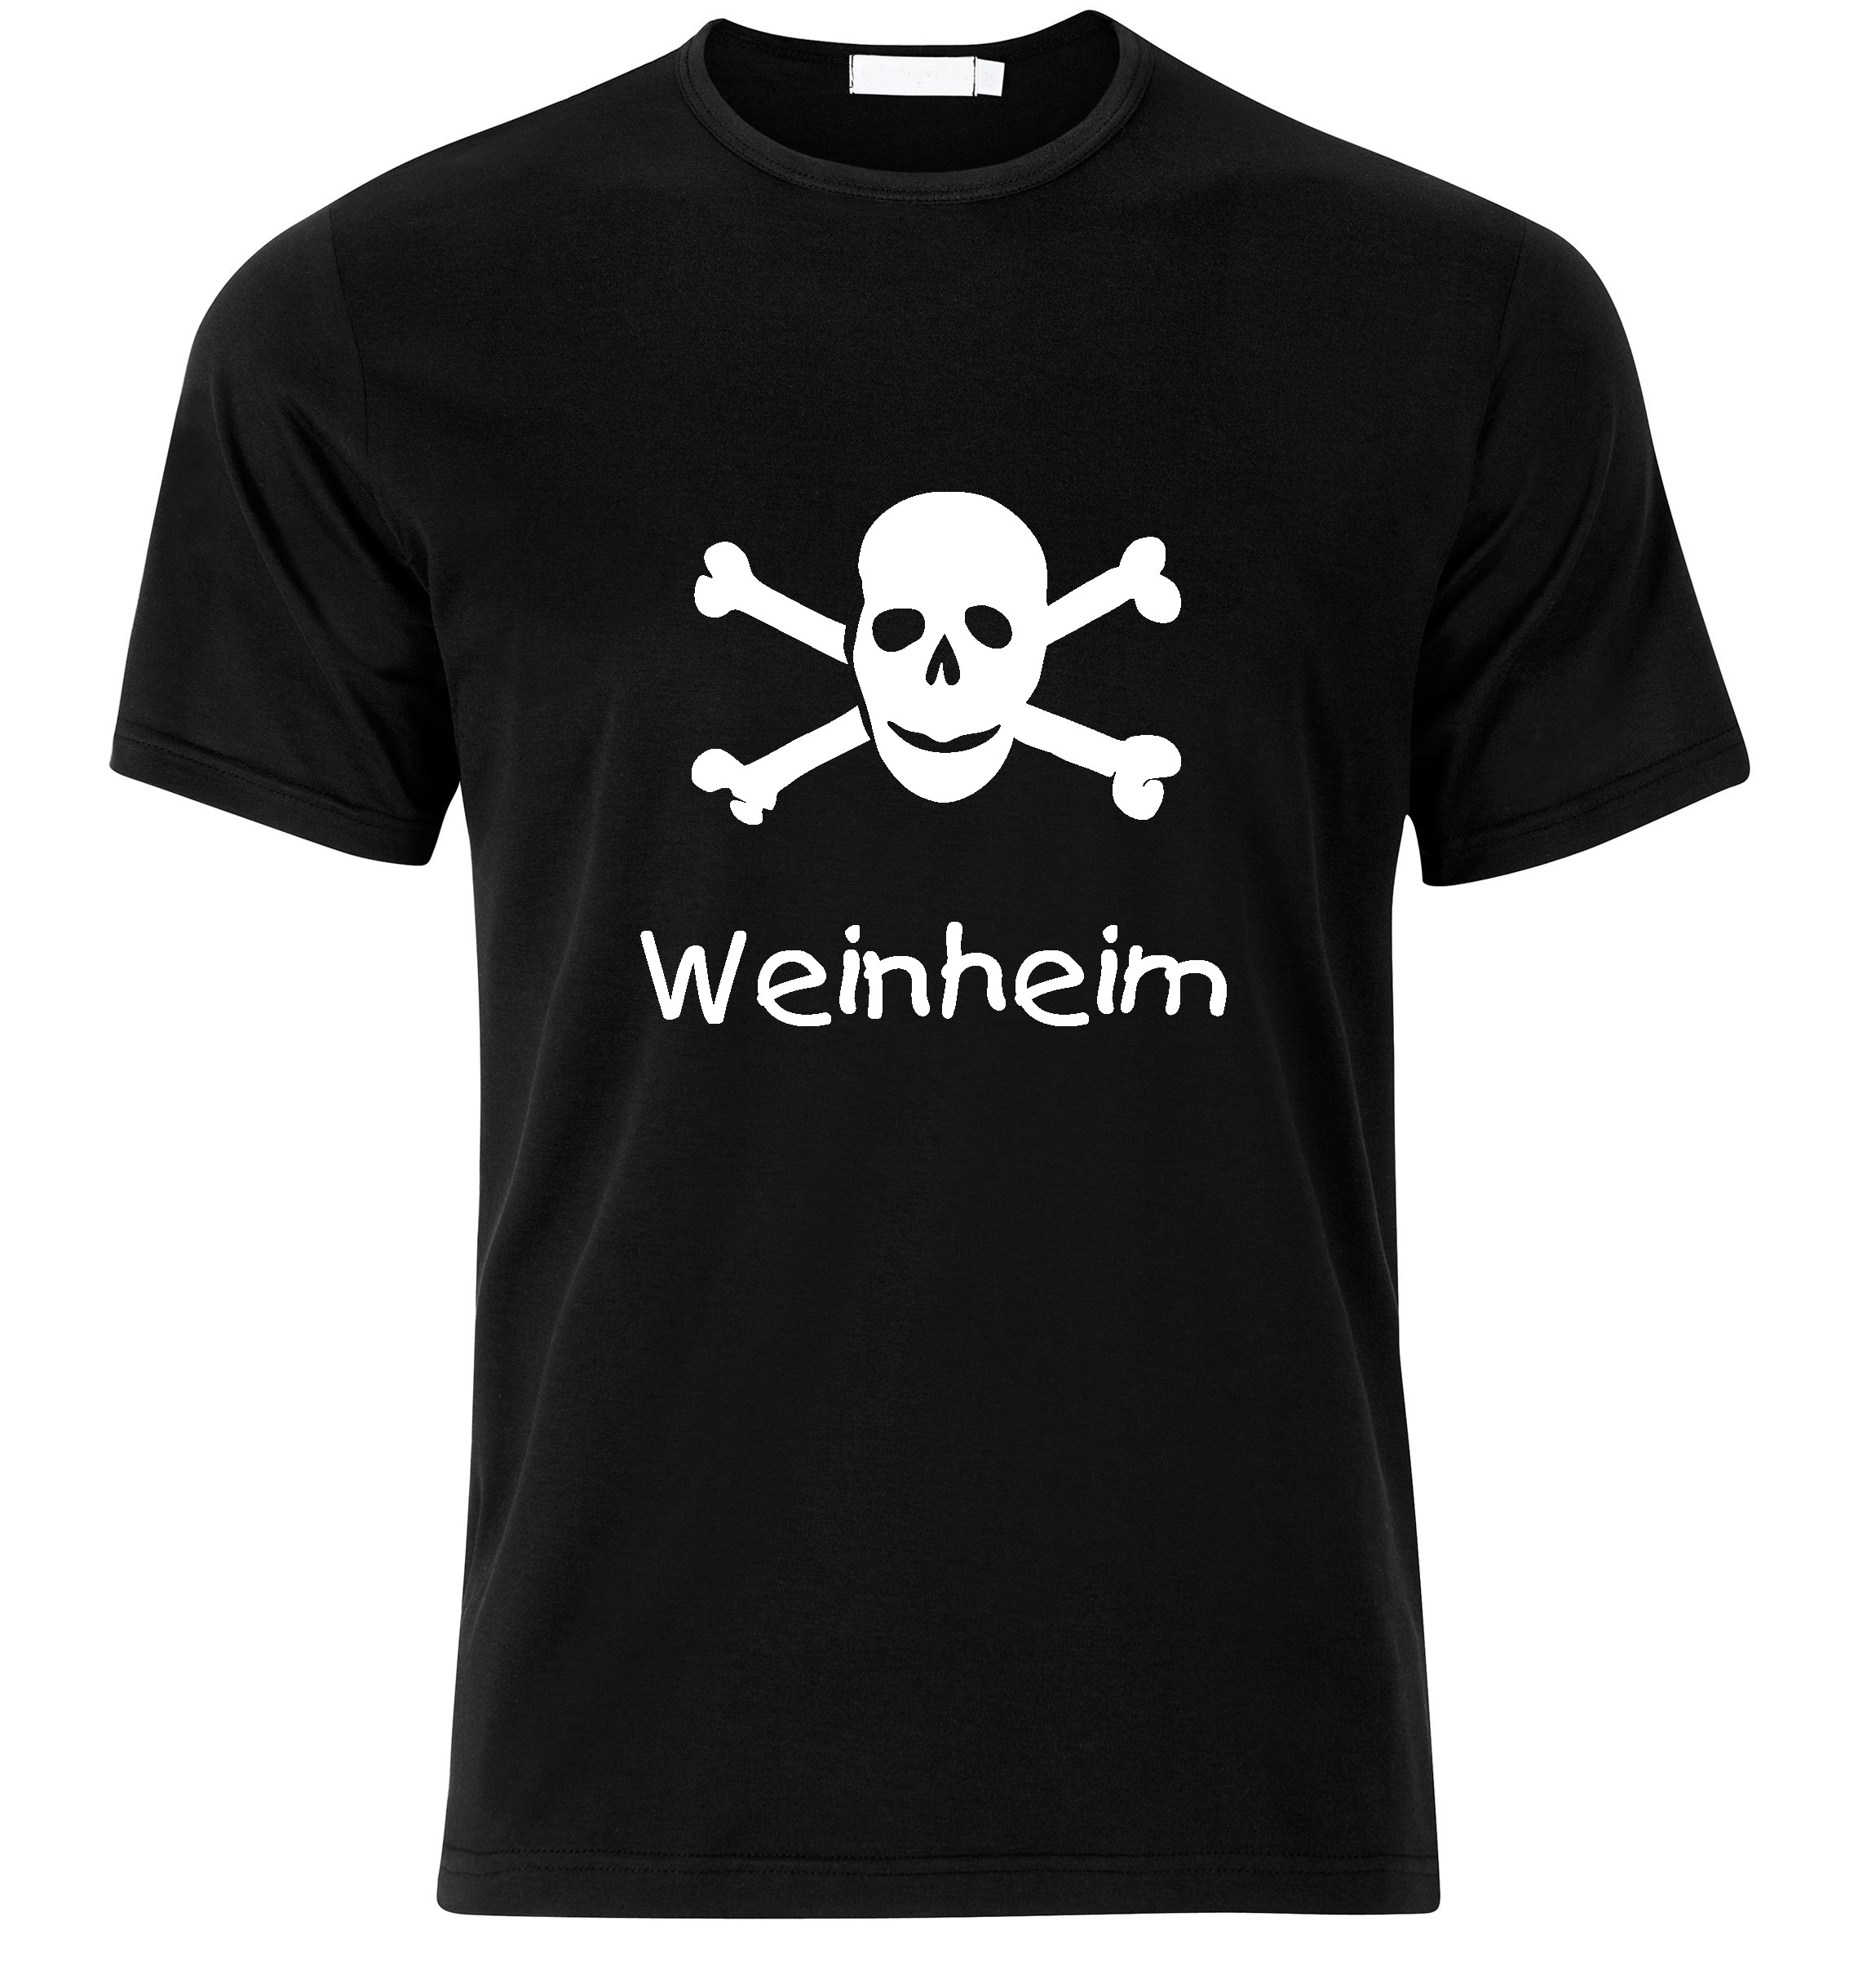 T-Shirt Weinheim Jolly Roger, Totenkopf